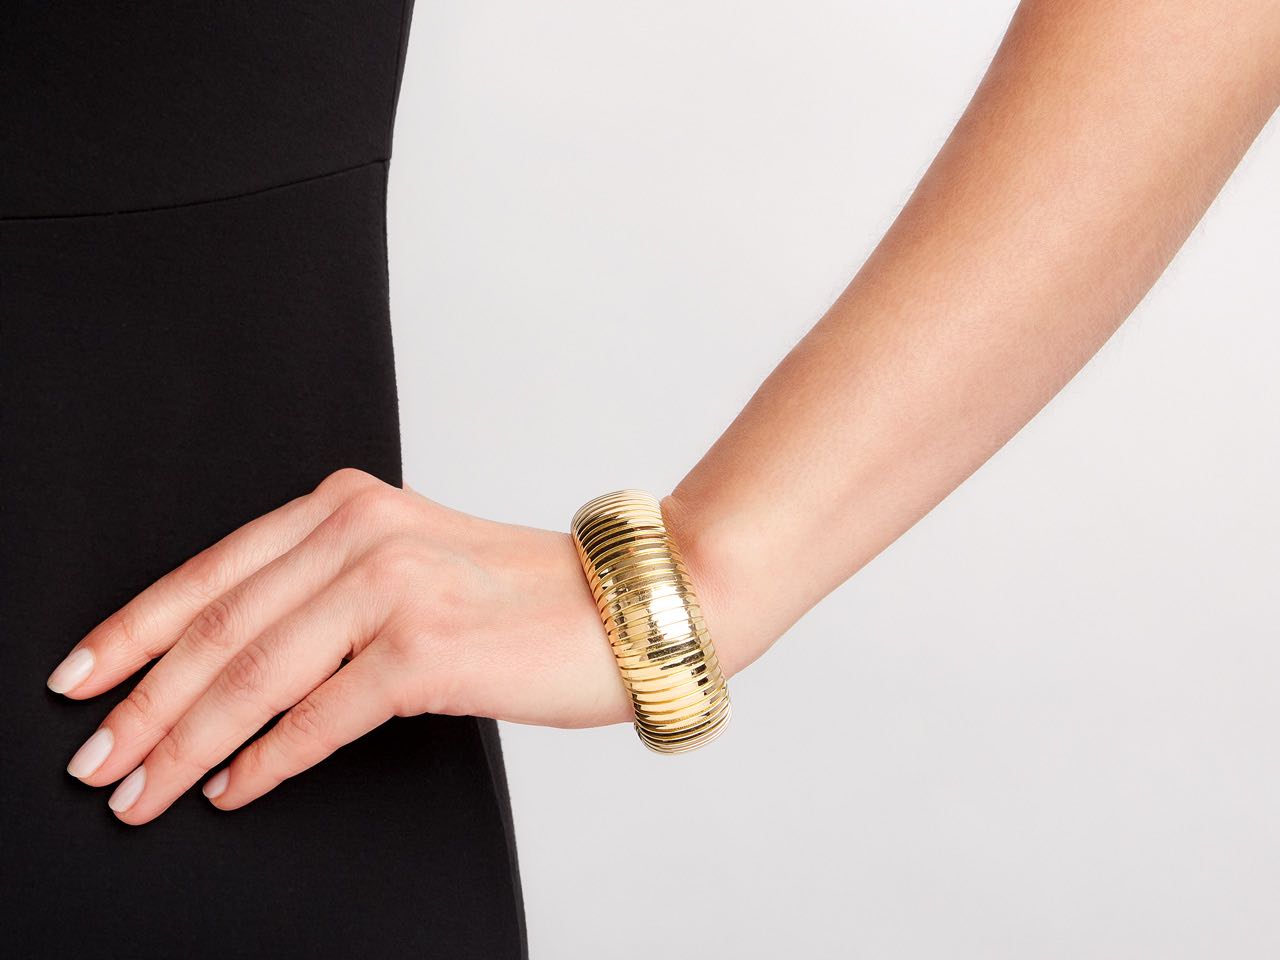 Domed Cuff Bracelet in 18K Gold, by Beladora